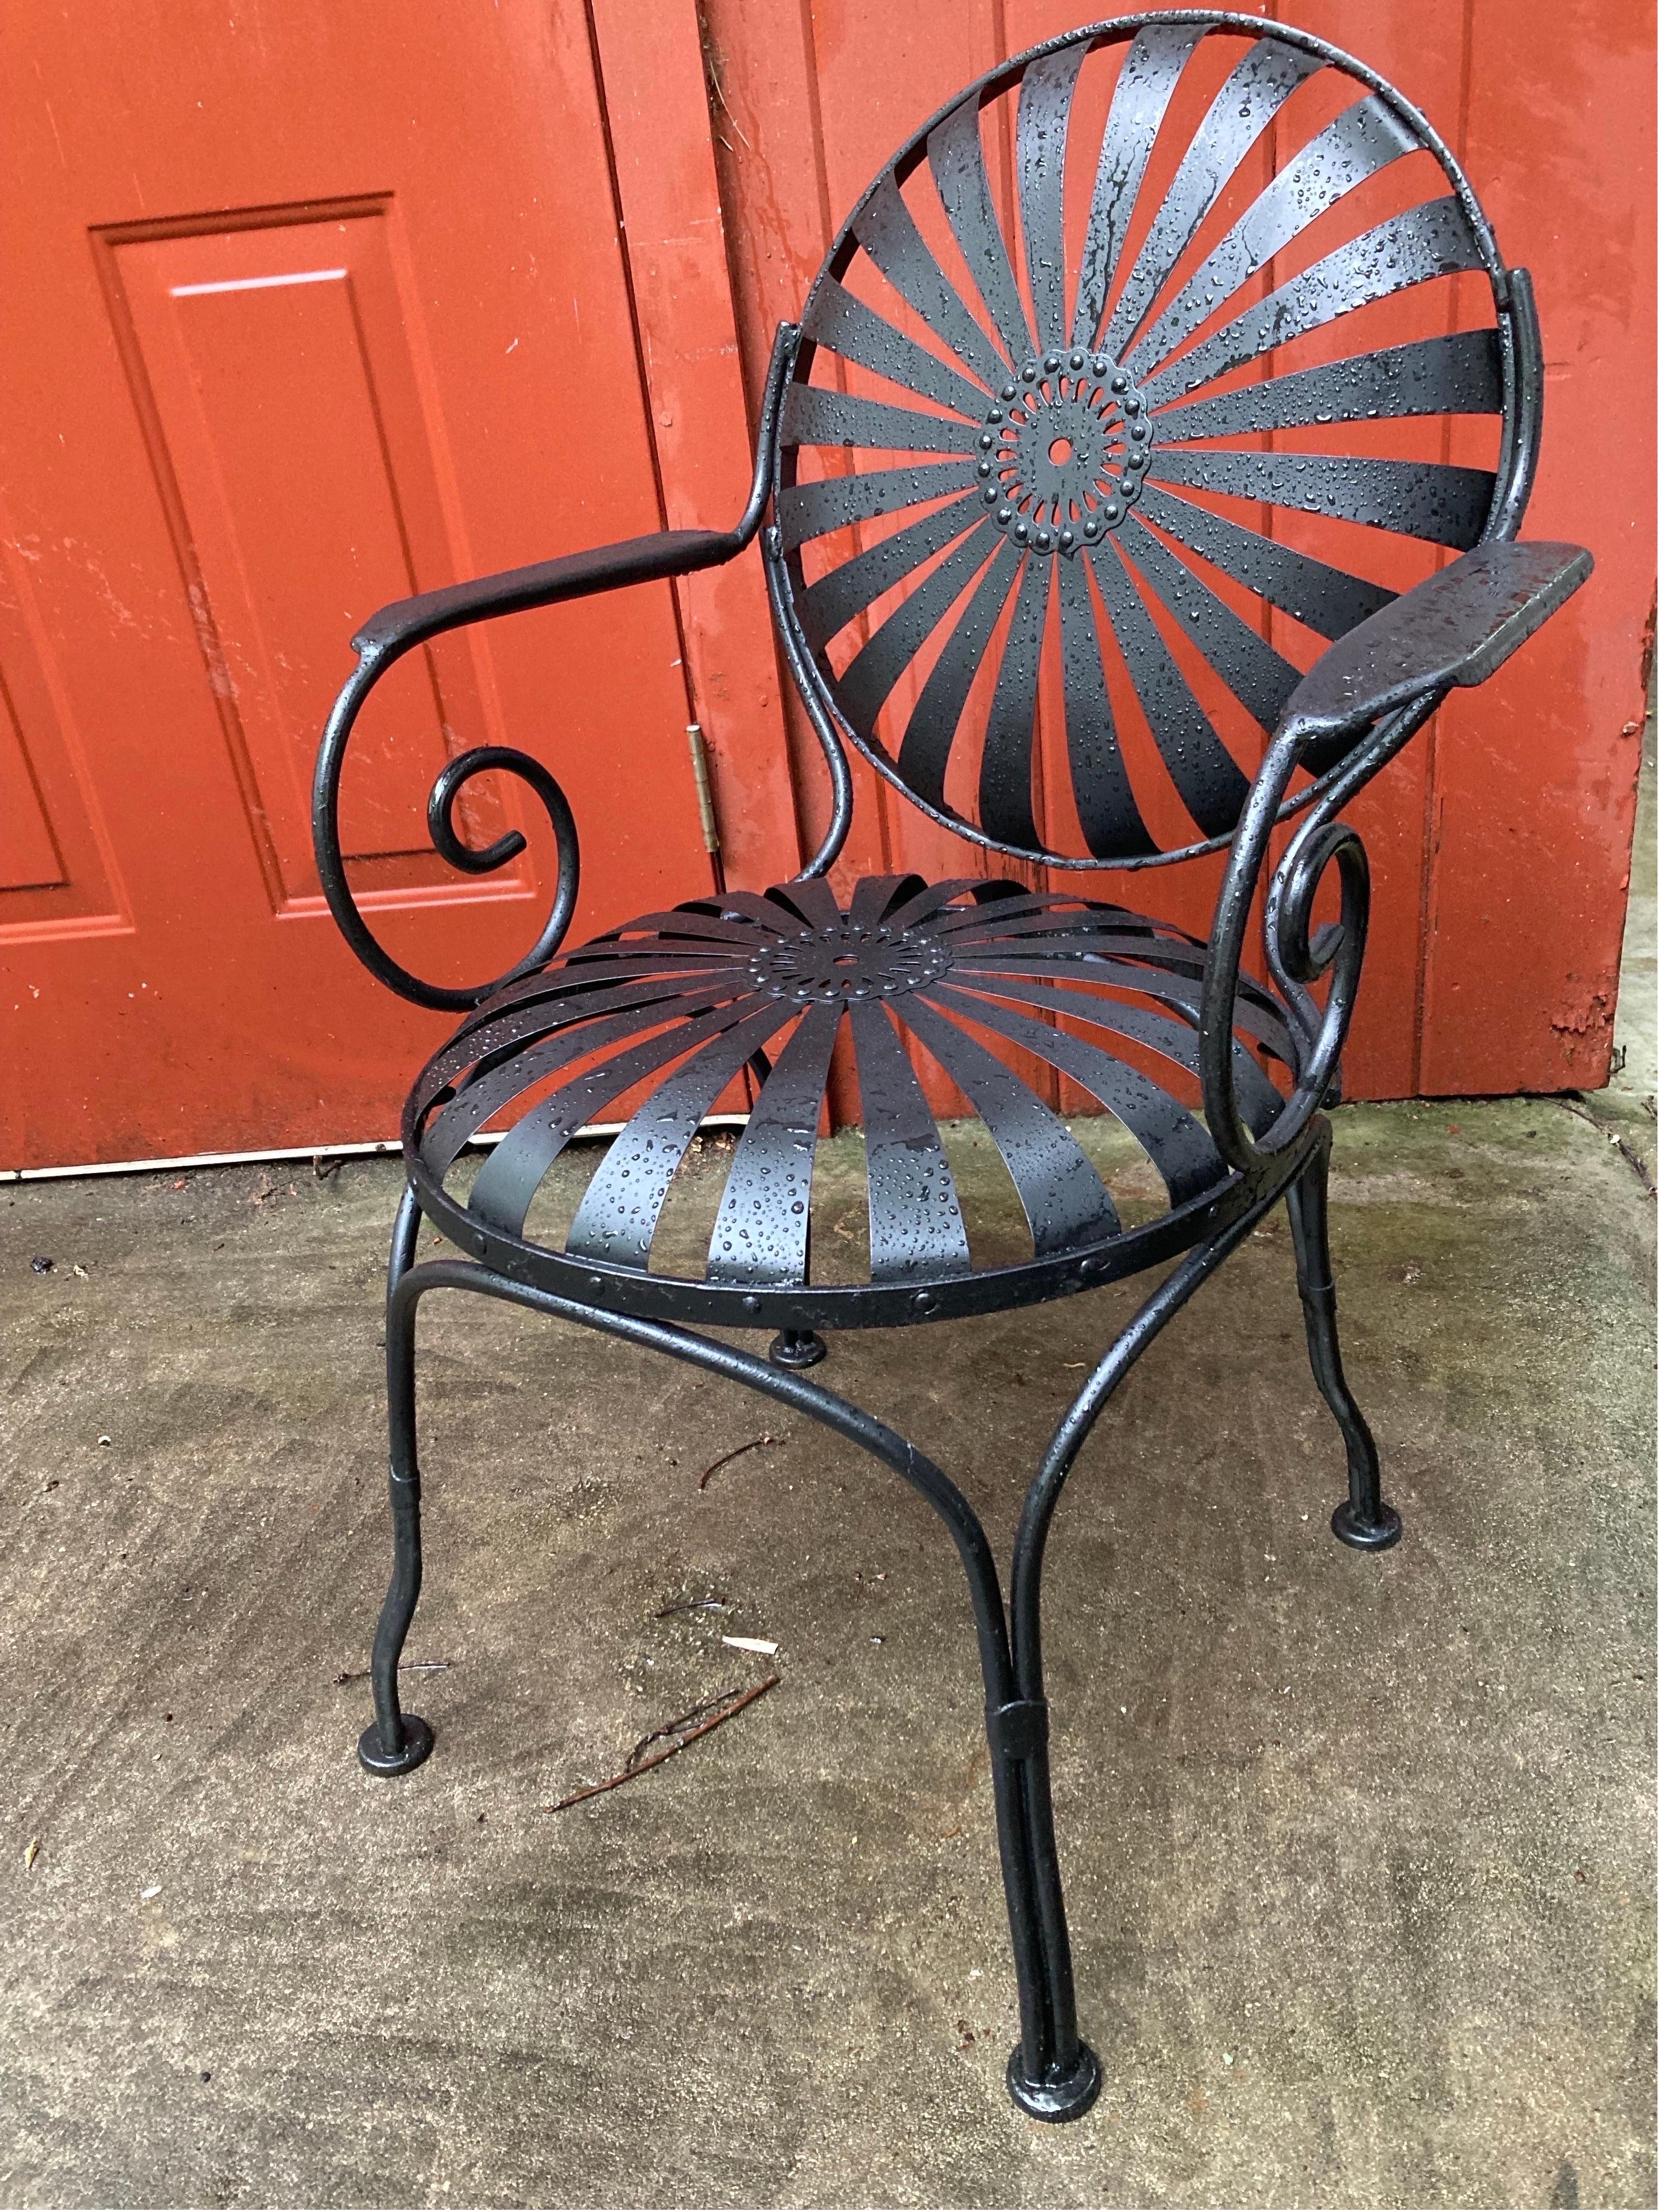 paire de chaises de jardin magnifiquement refaite, sablée, apprêtée et peinte en noir satiné,
pas de marque de fabricant... 
ils peuvent être utilisés à l'intérieur ou à l'extérieur
peut résister à la chaleur et au soleil direct